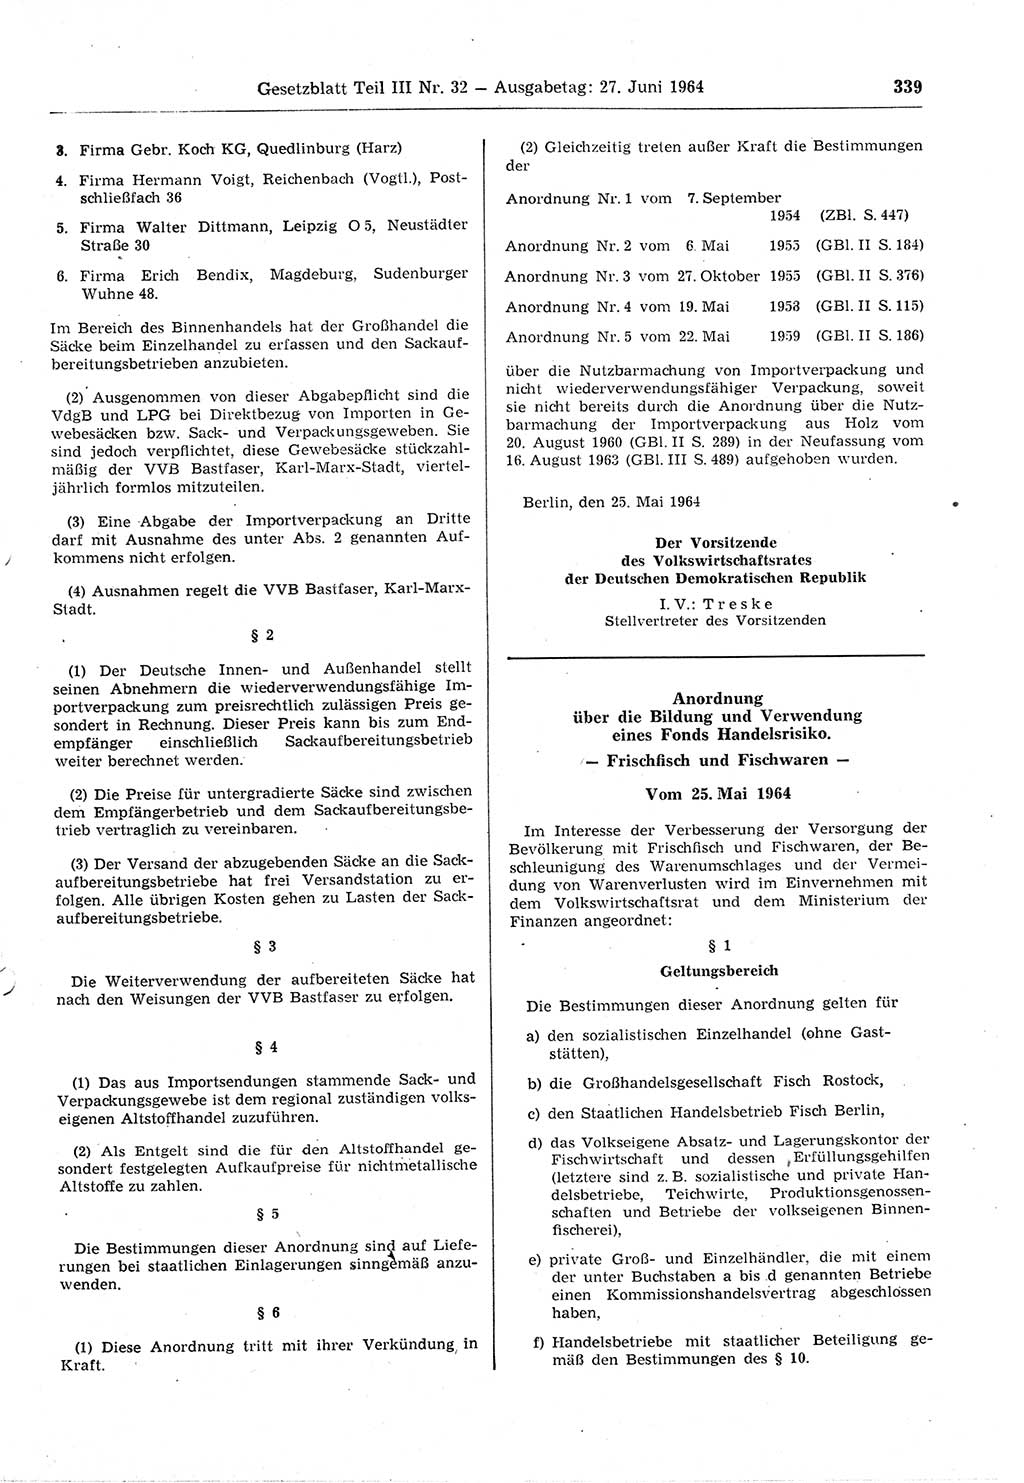 Gesetzblatt (GBl.) der Deutschen Demokratischen Republik (DDR) Teil ⅠⅠⅠ 1964, Seite 339 (GBl. DDR ⅠⅠⅠ 1964, S. 339)